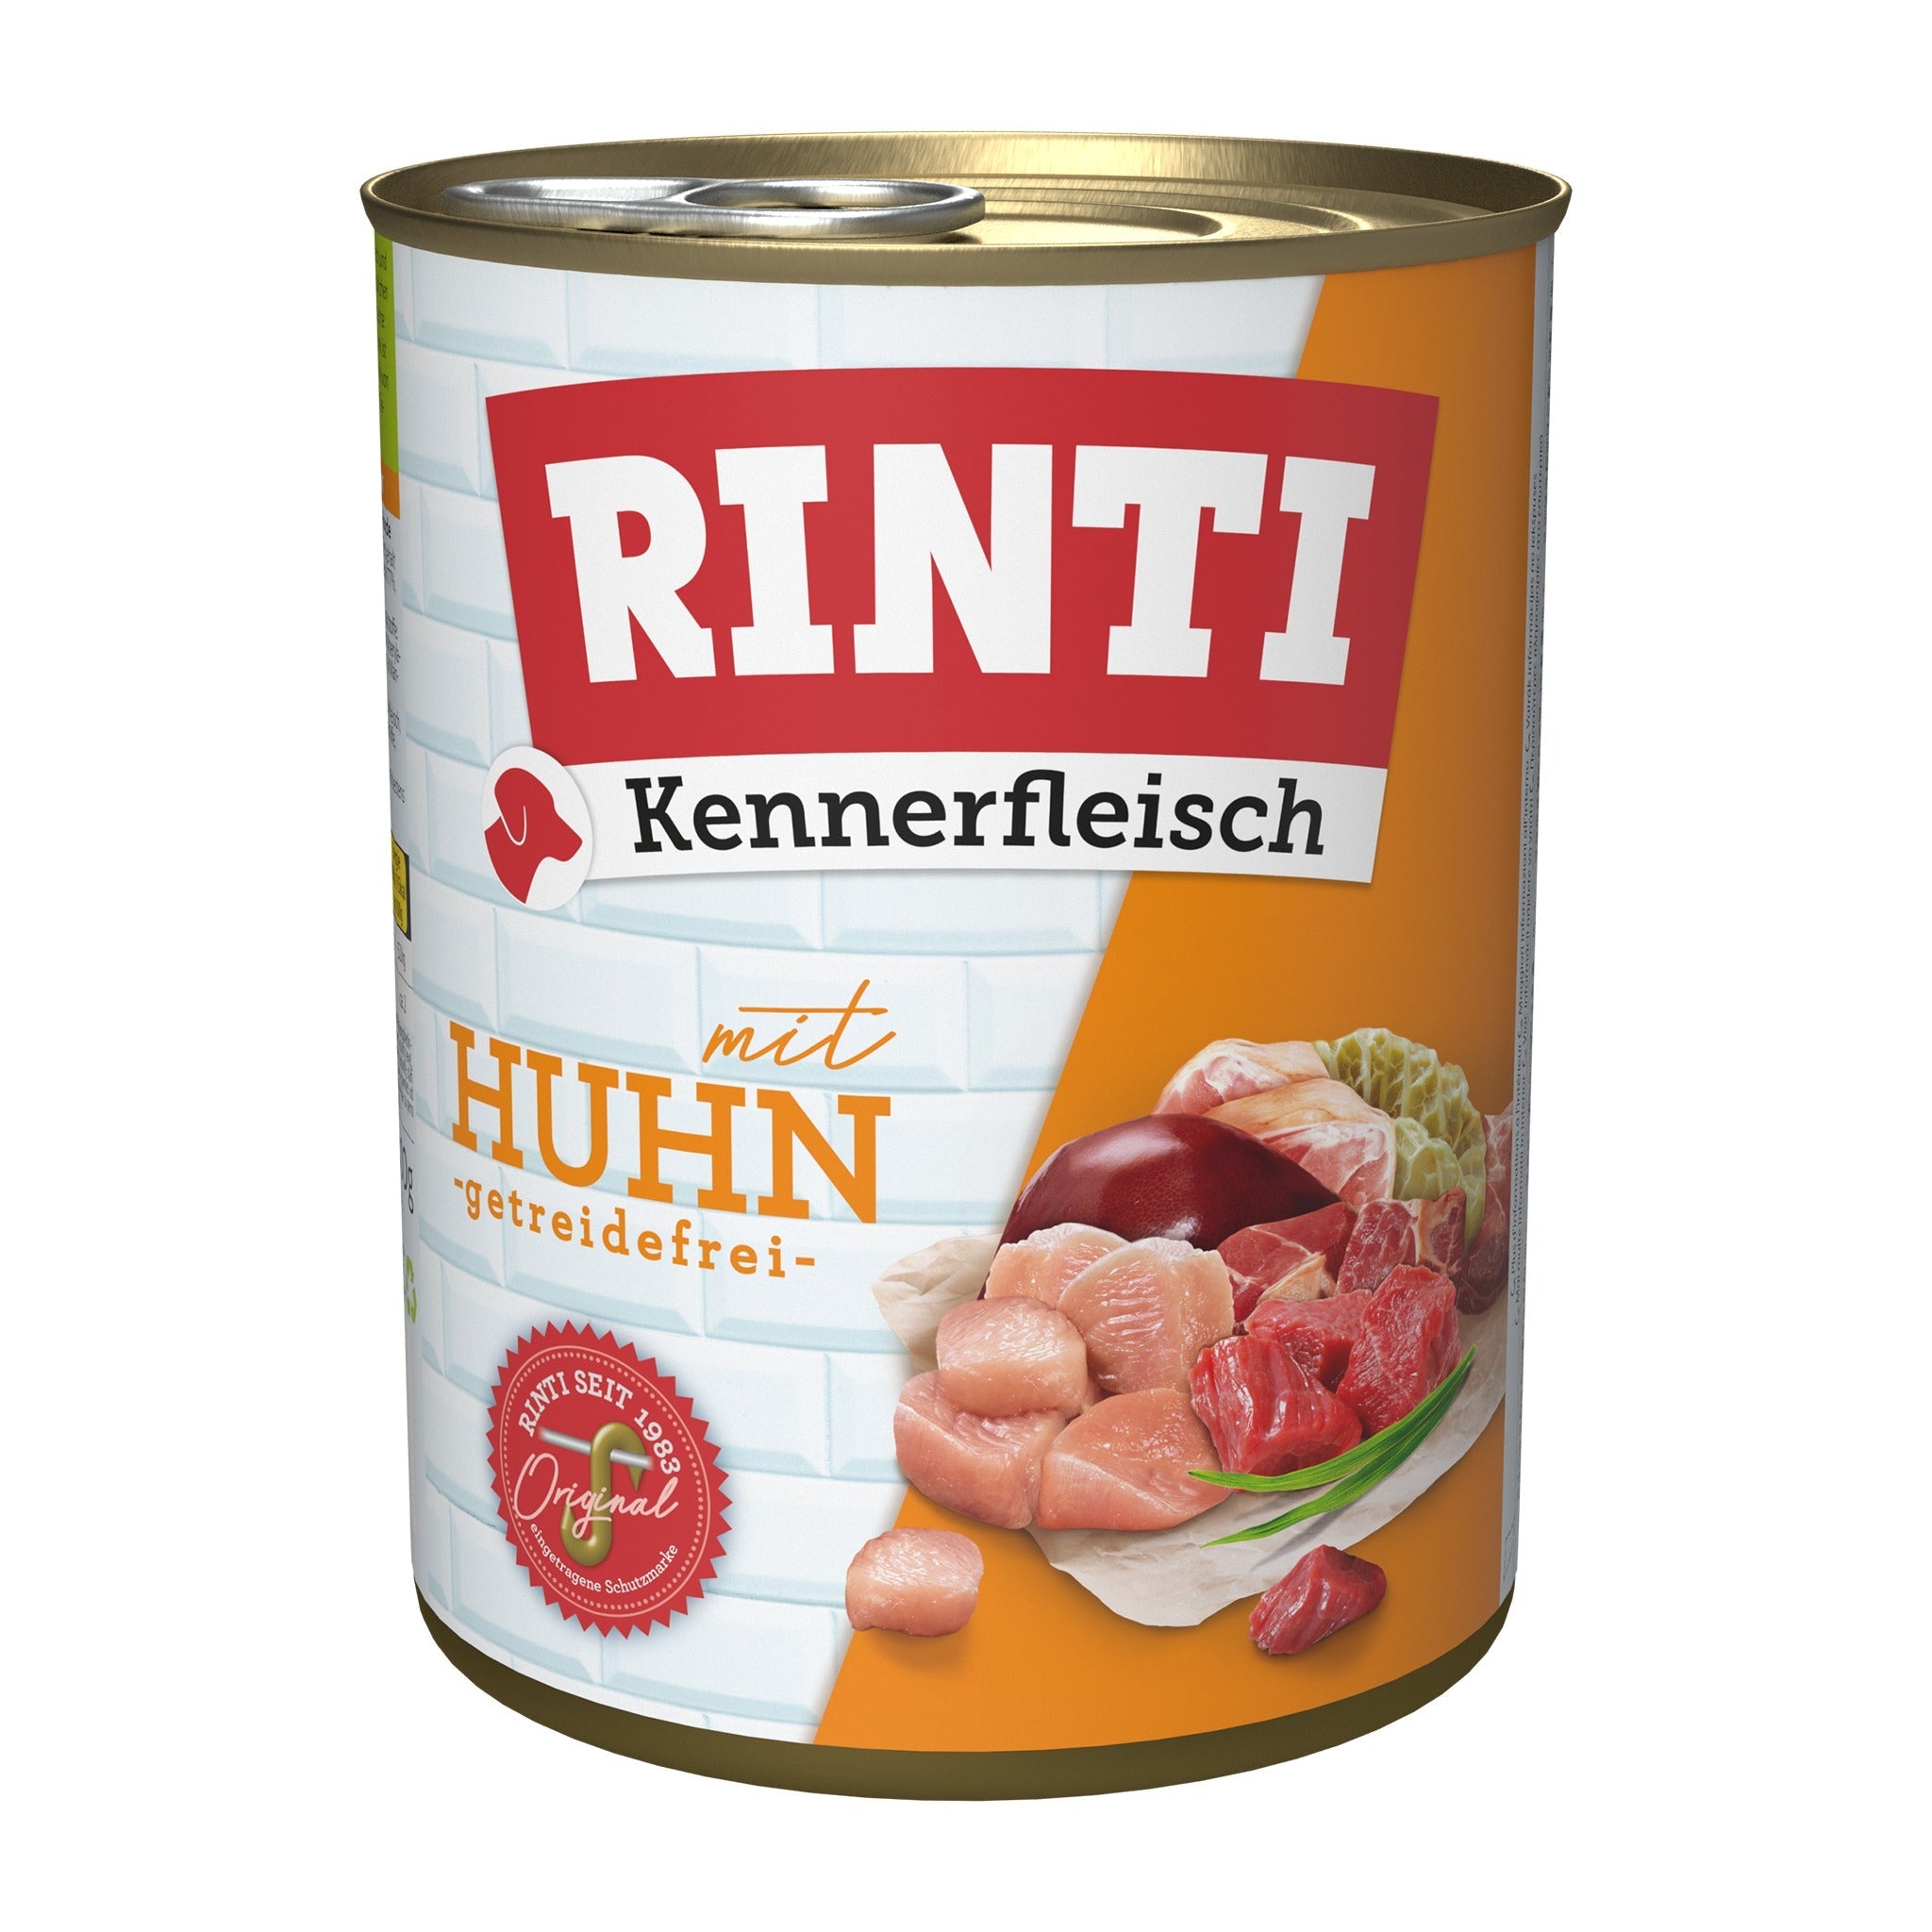 RINTI Dose, Kennerfleisch mit Huhn - Woofshack